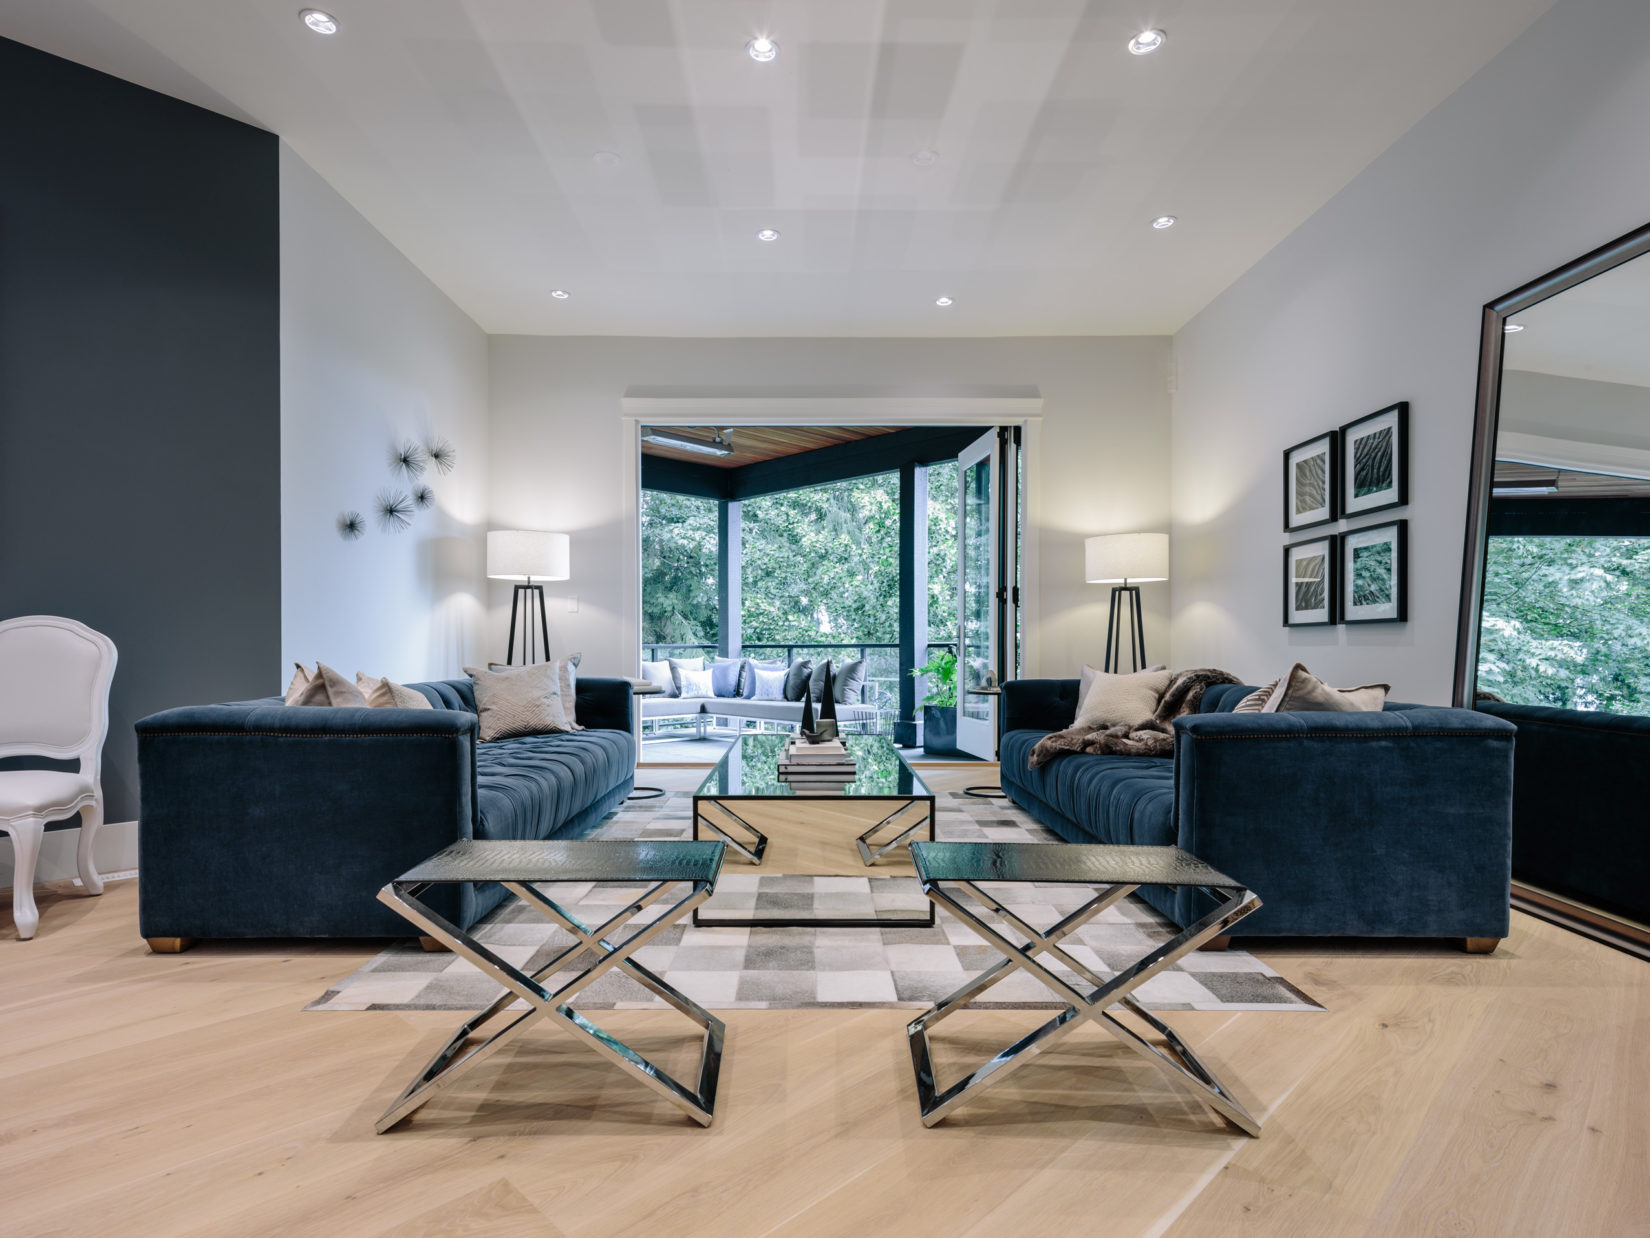 Alexandra Interiors contemporary living room with blue velvet sofas. Interior design Vancouver